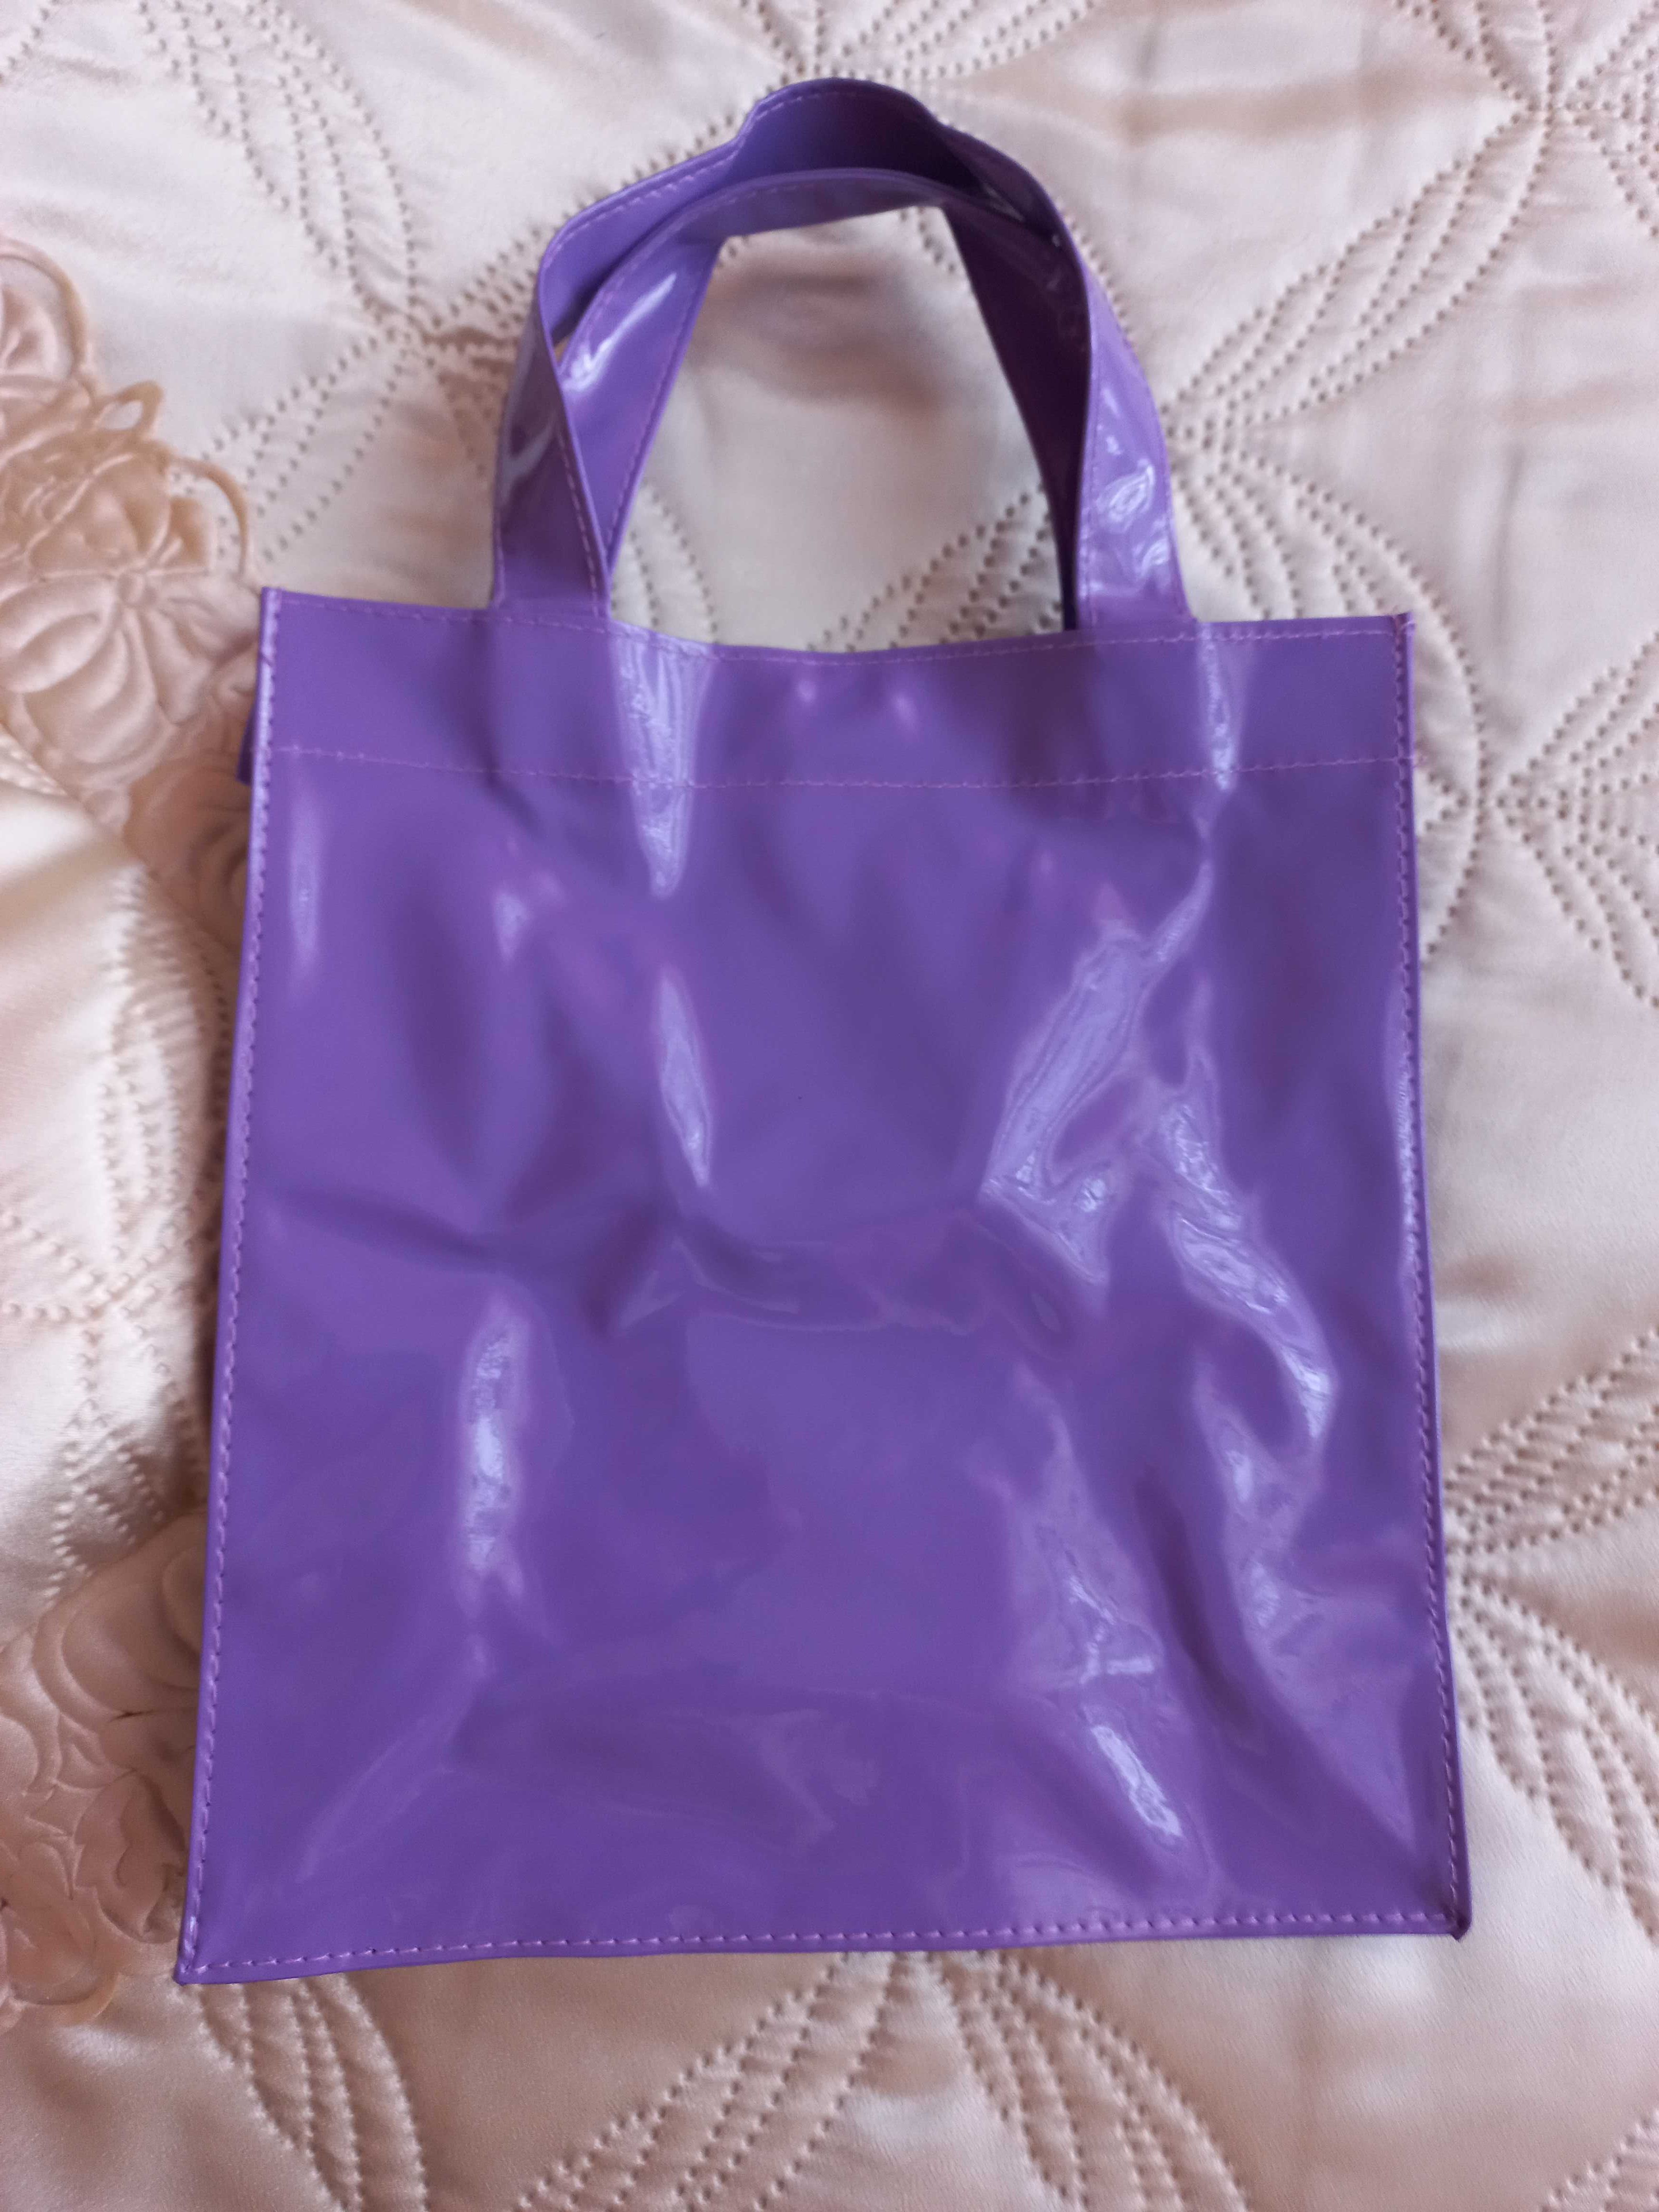 Torba, torebka dla dziecka - fioletowa, nowa - lakierowana